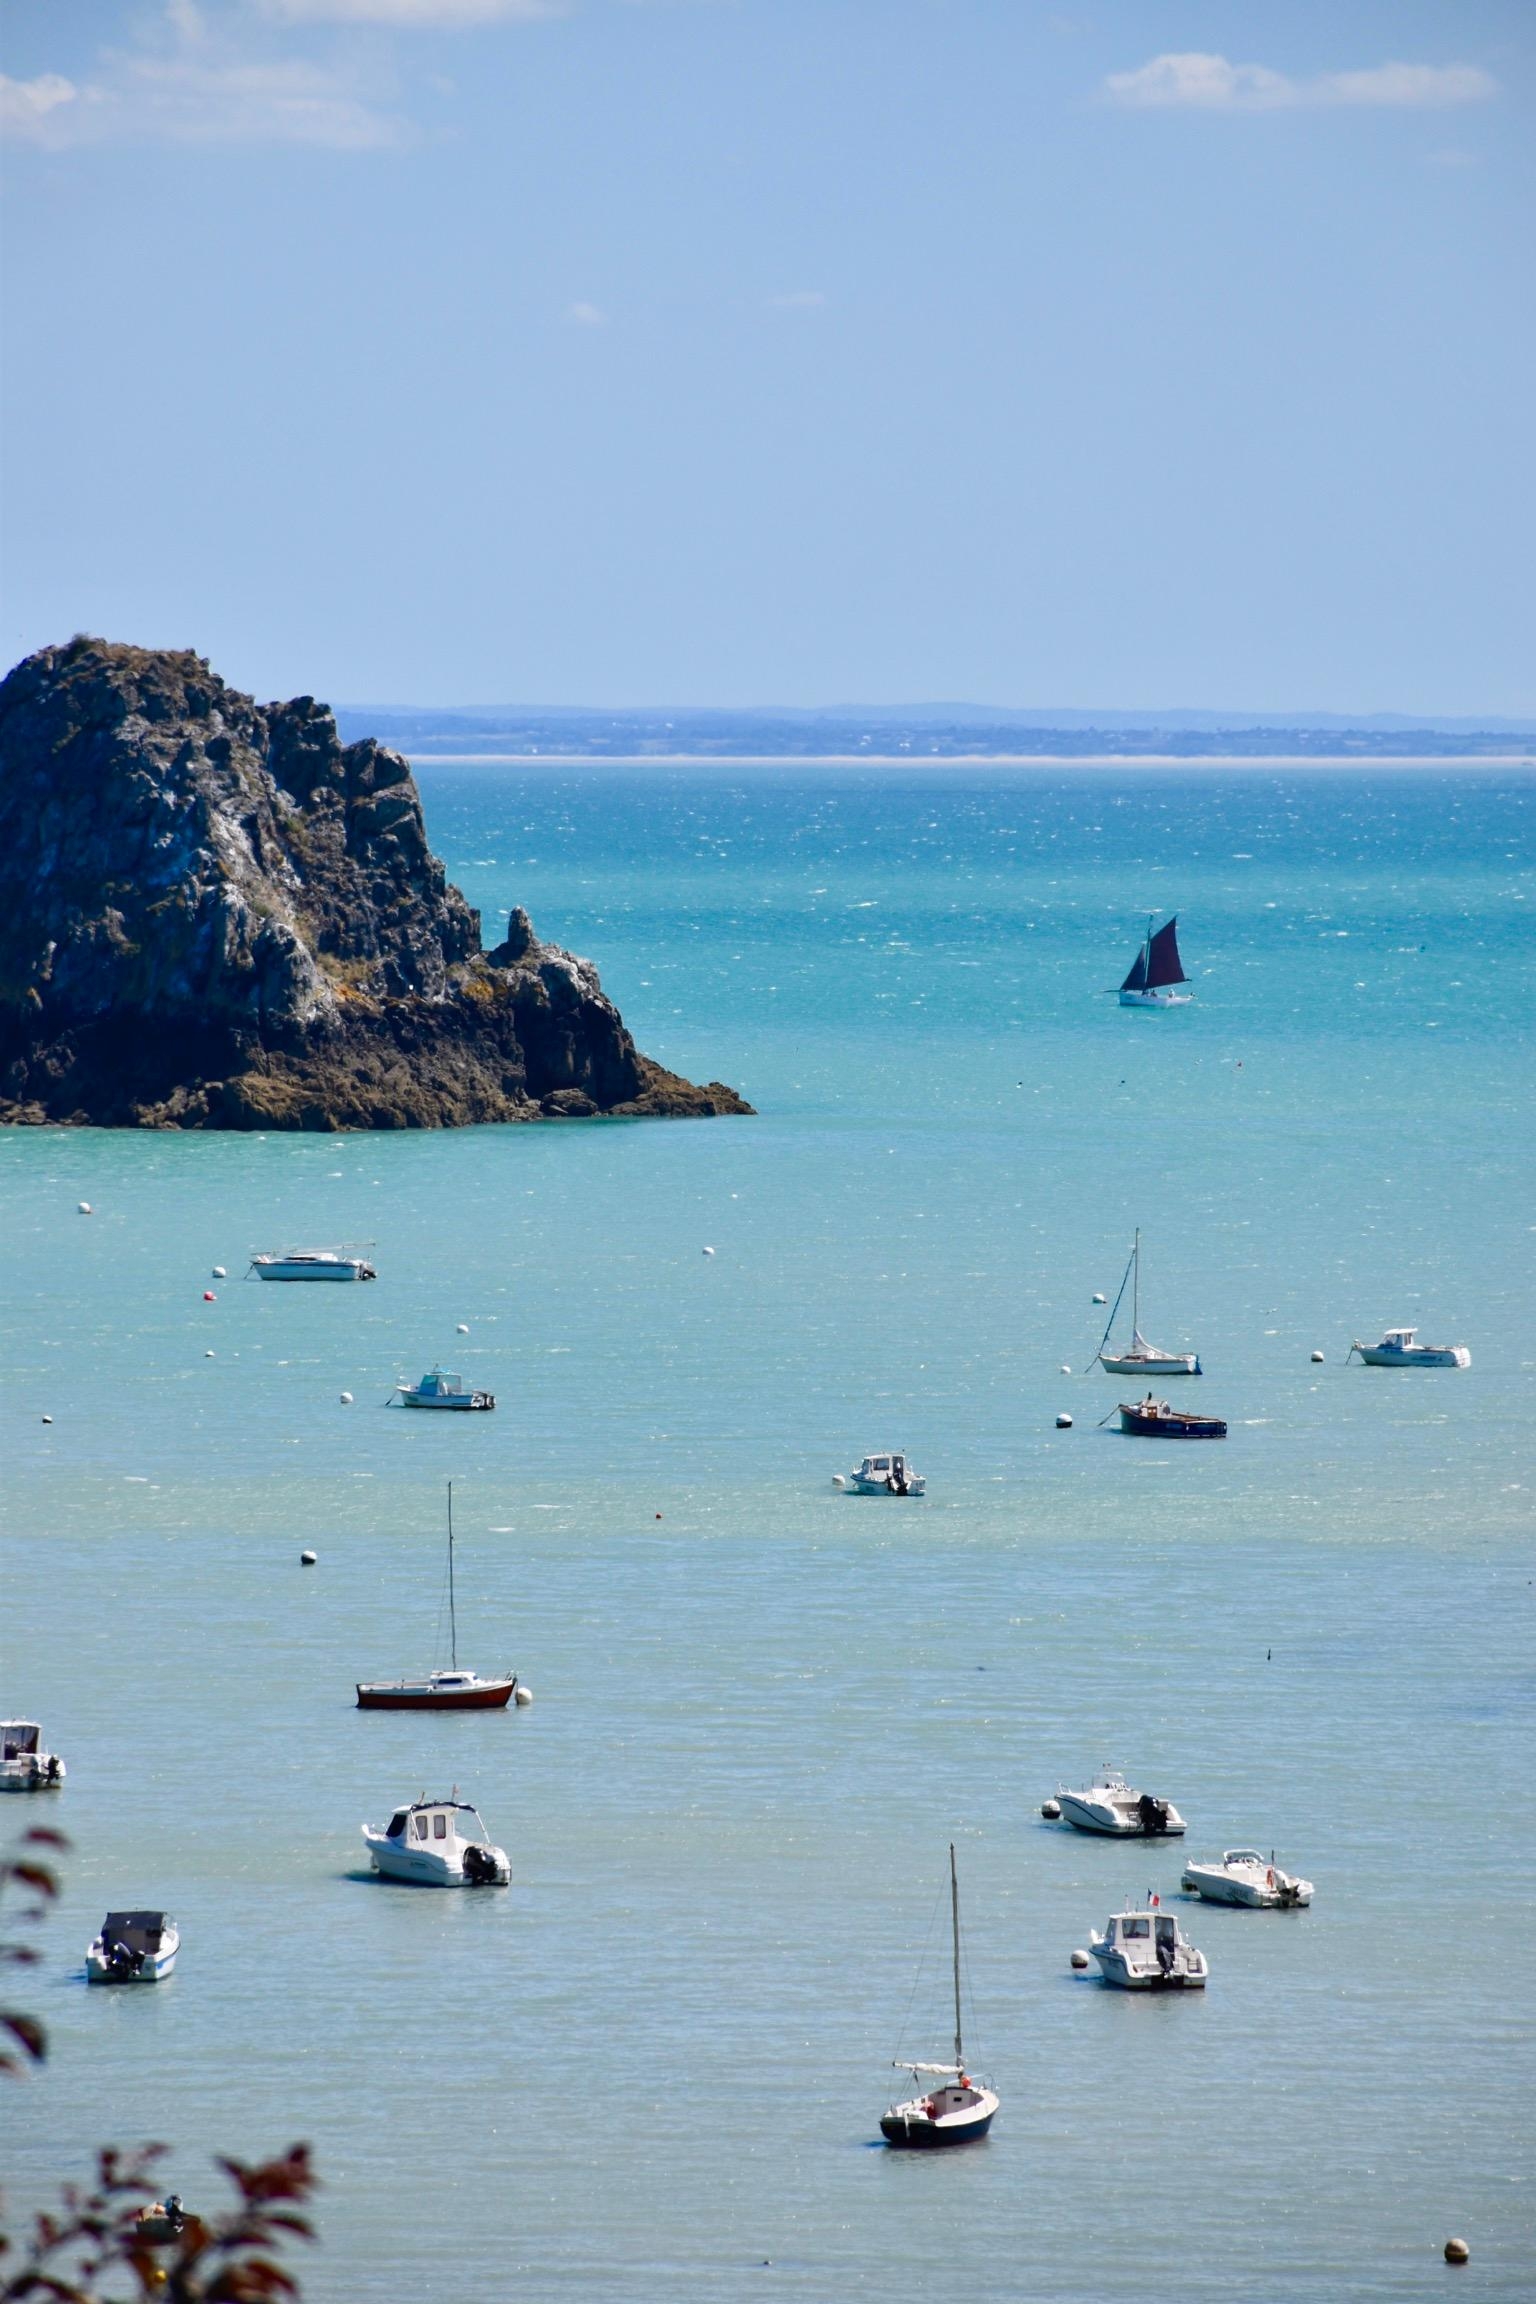 Zurück aus der Sommerpause! Liebe Grüße aus Bretagne 🌊